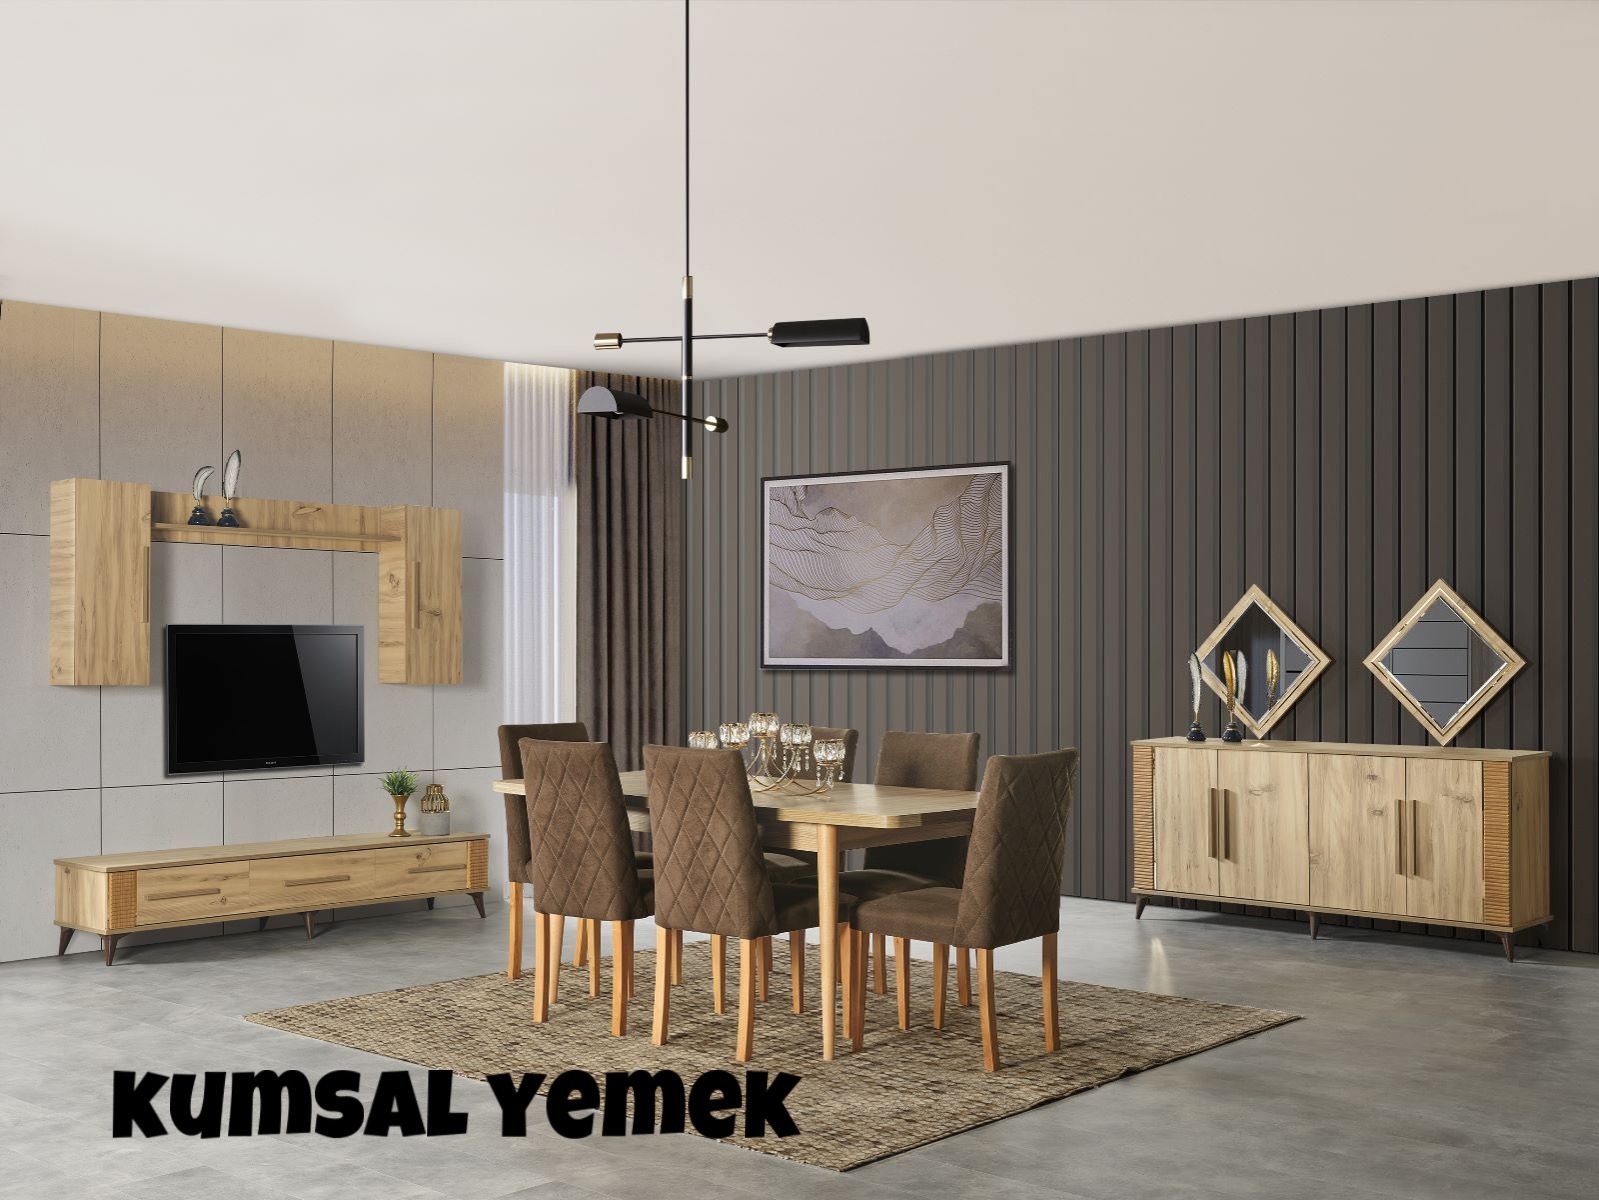 Bursa İnegöl Kaswara Design 05449072625 - 05449072626